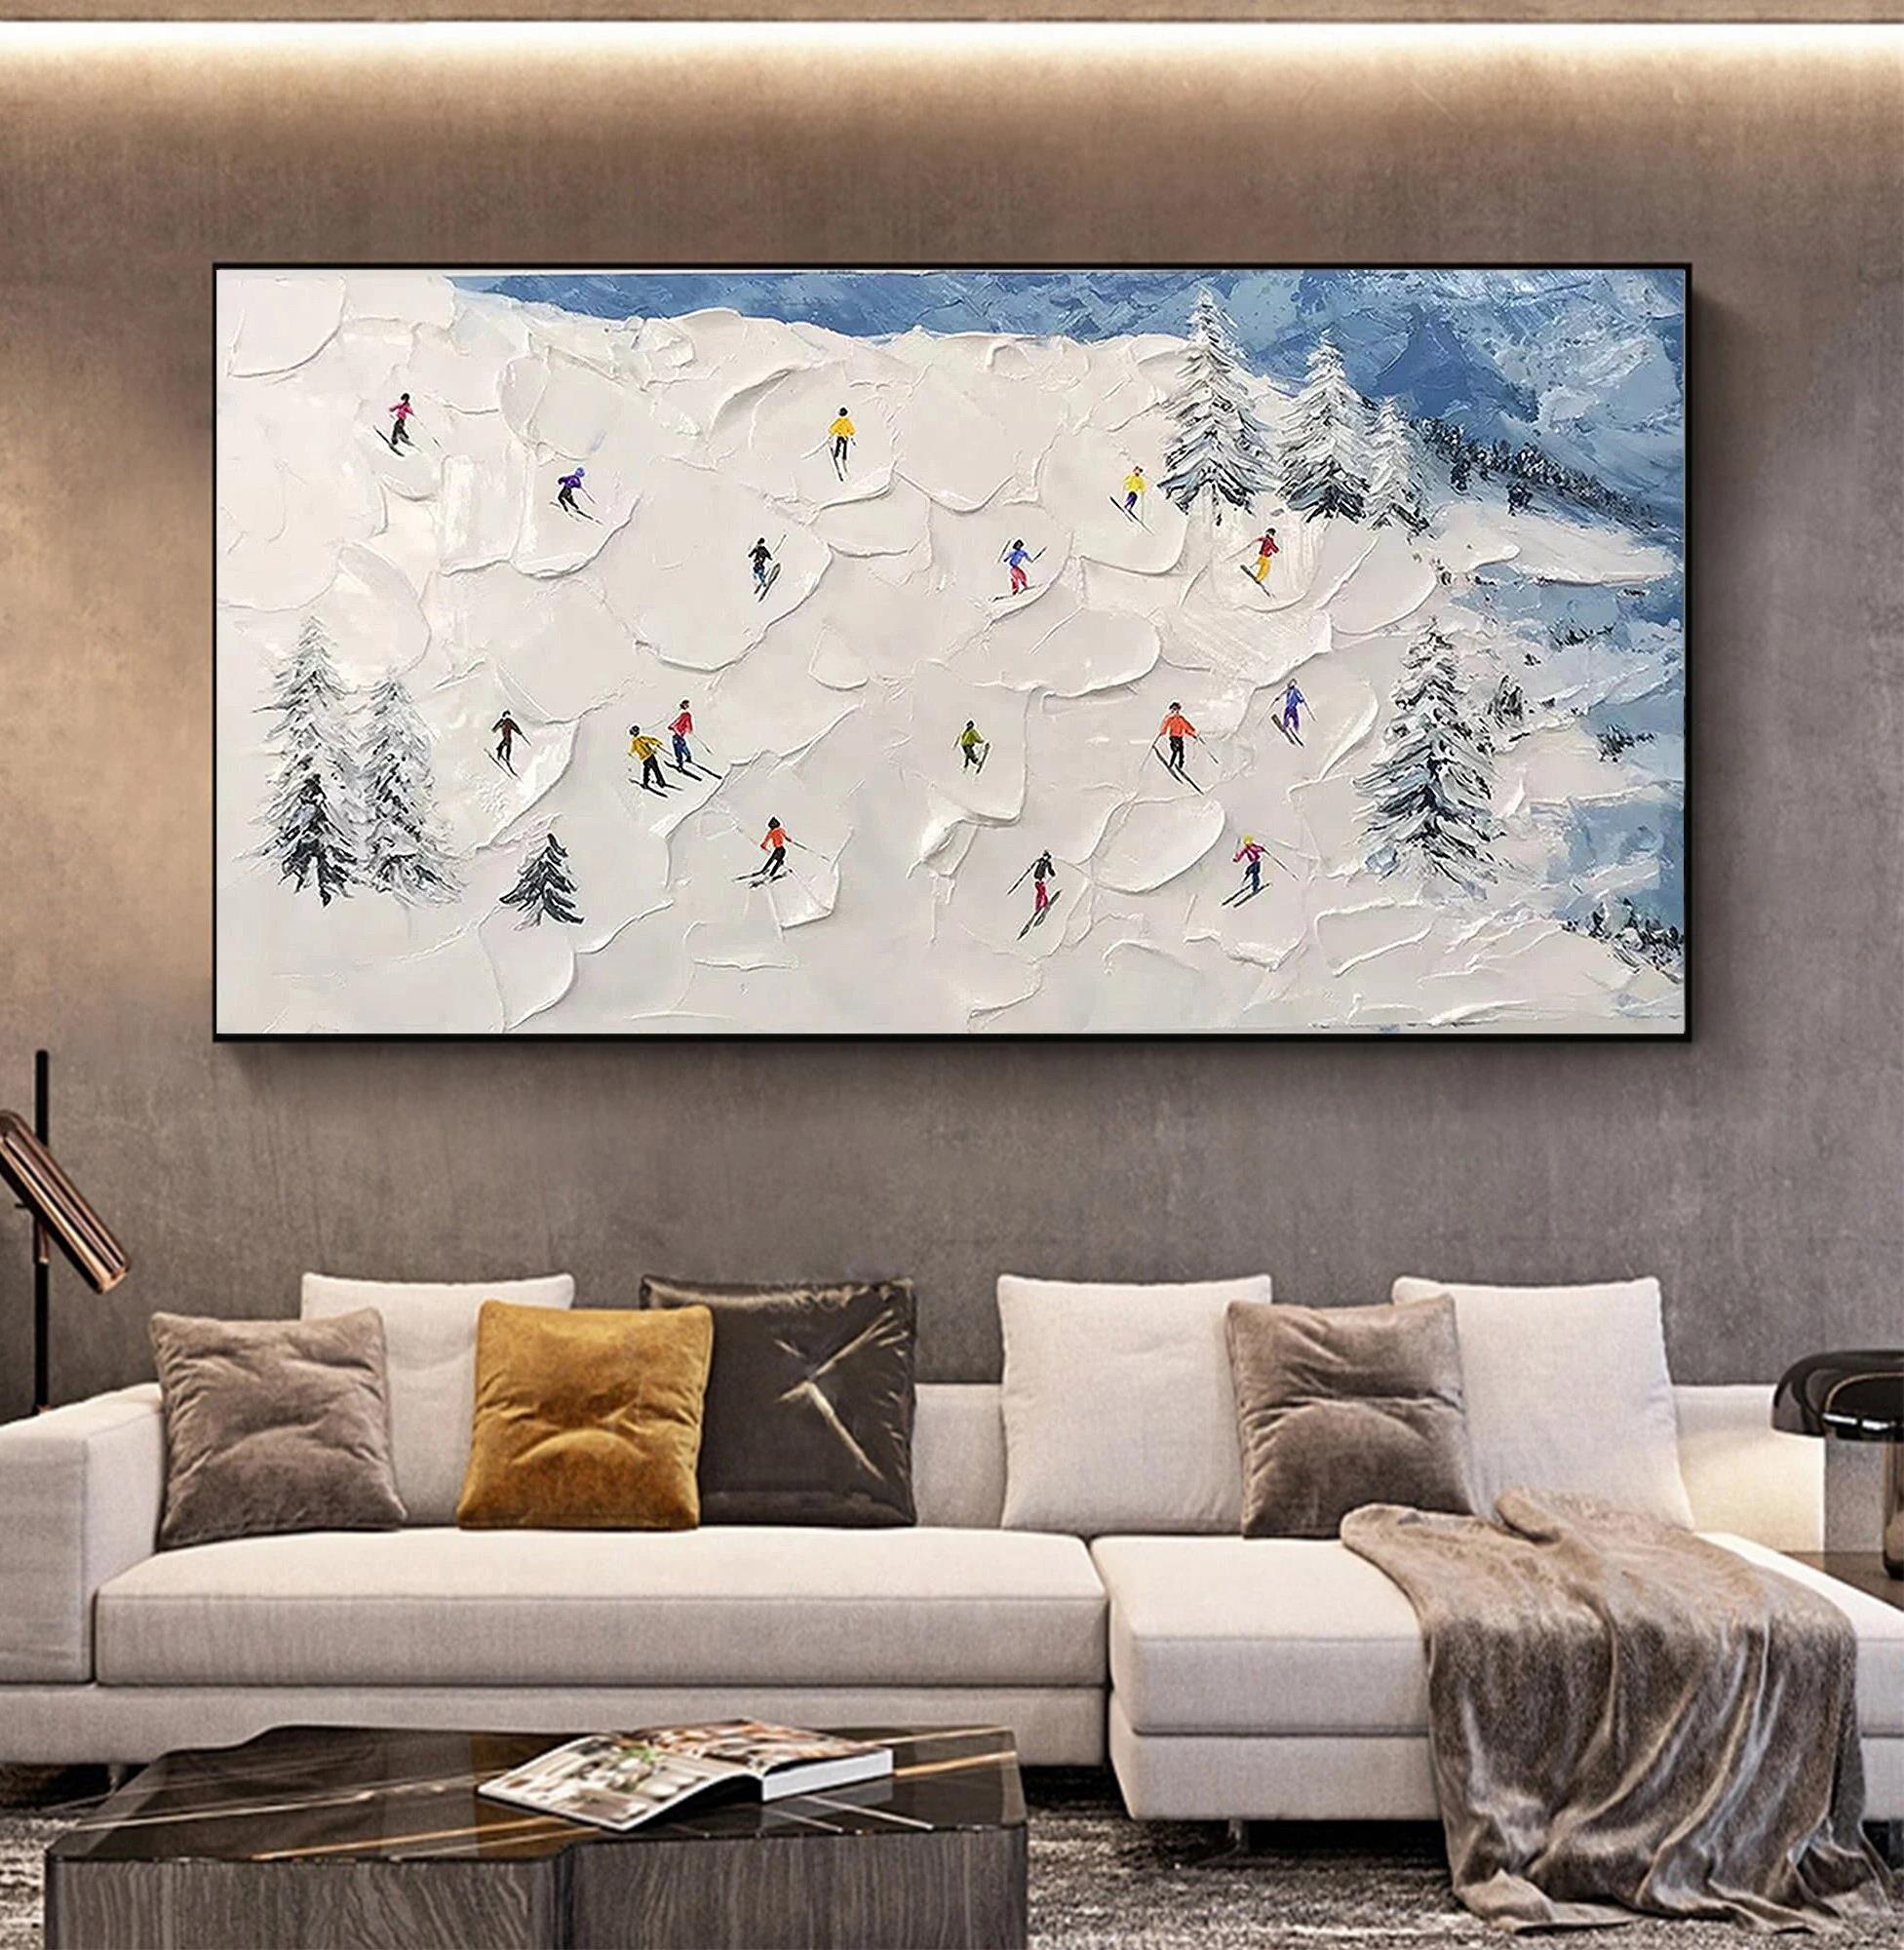 パレットナイフのウォールアートミニマリズムによる雪山のスキーヤー油絵